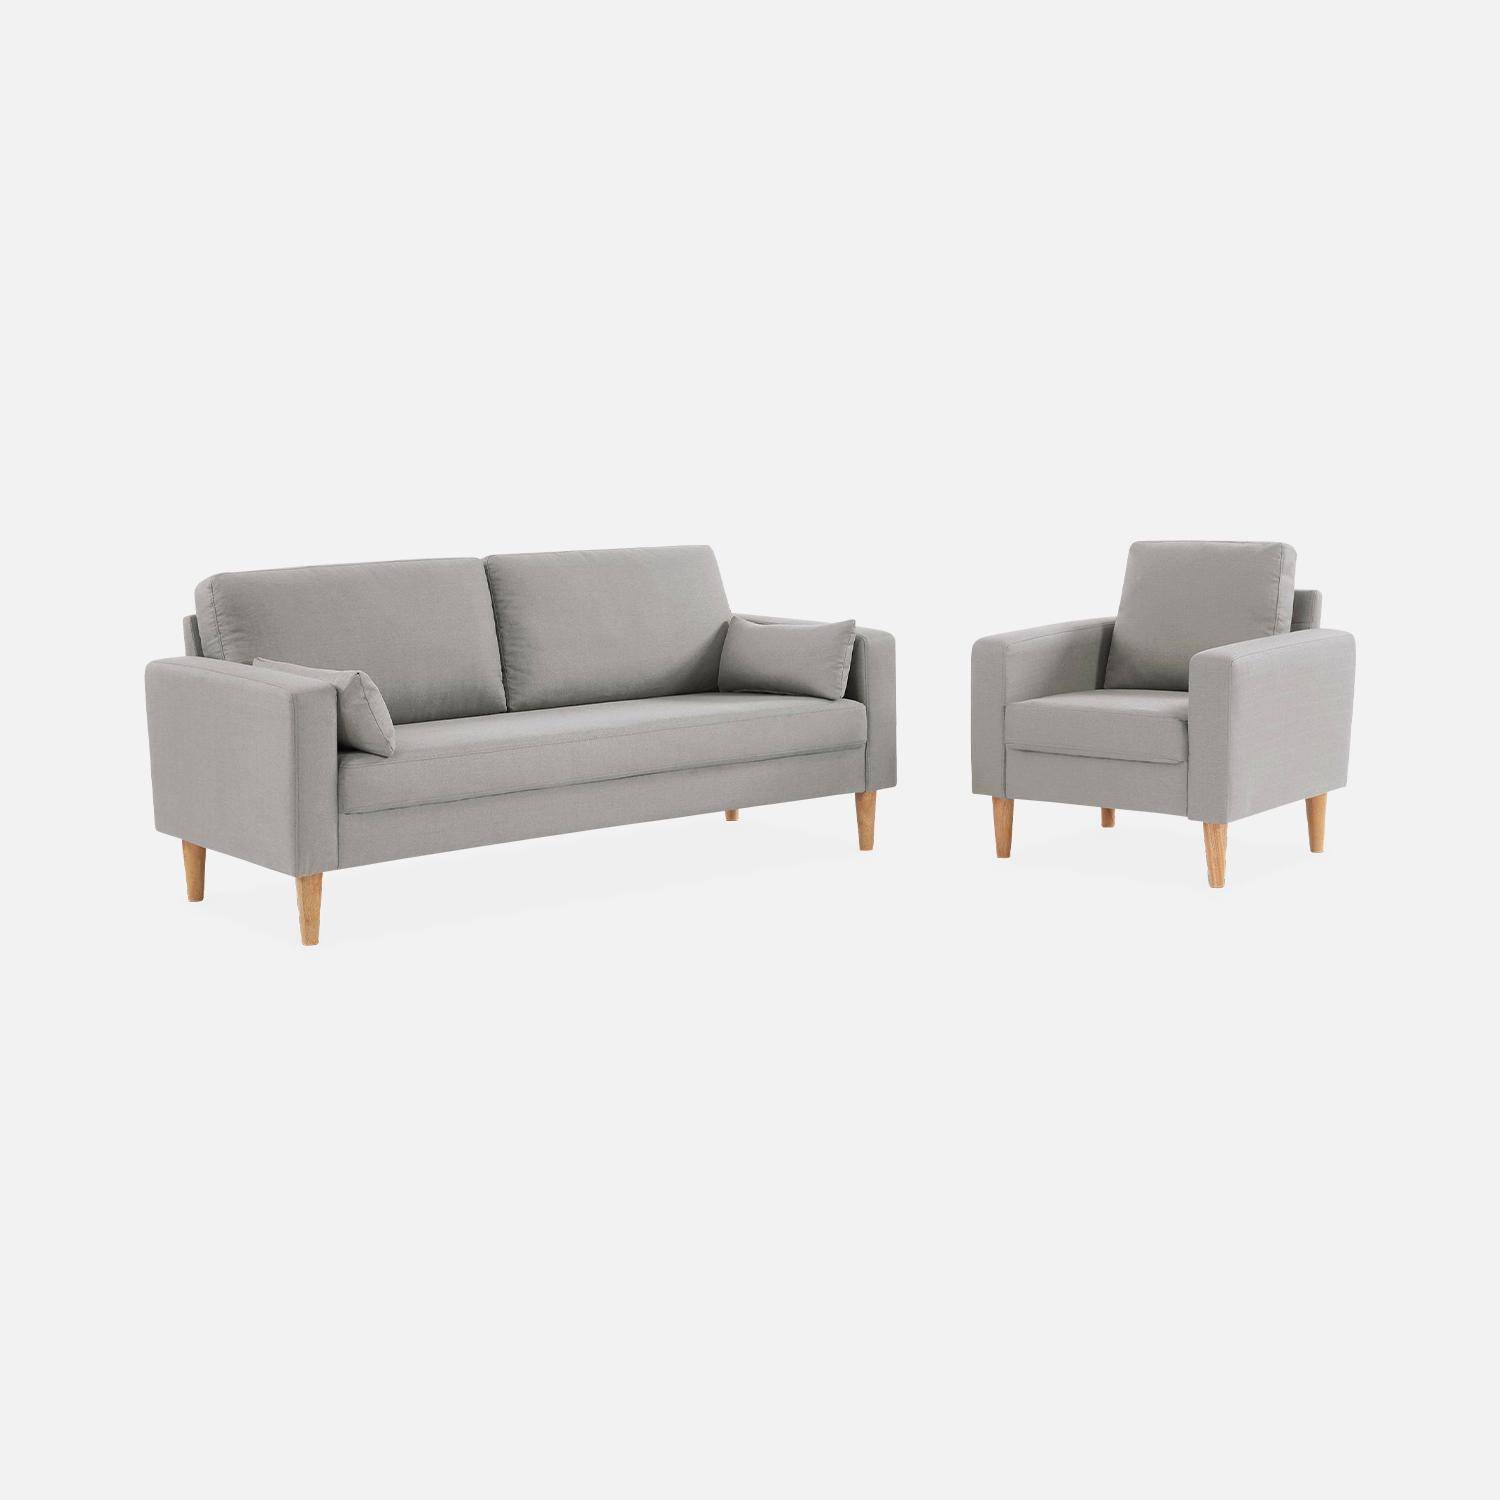 Sillón de tela gris claro - Bjorn - Sillón 1 plaza fijo recto patas madera, sillón escandinavo   Photo5